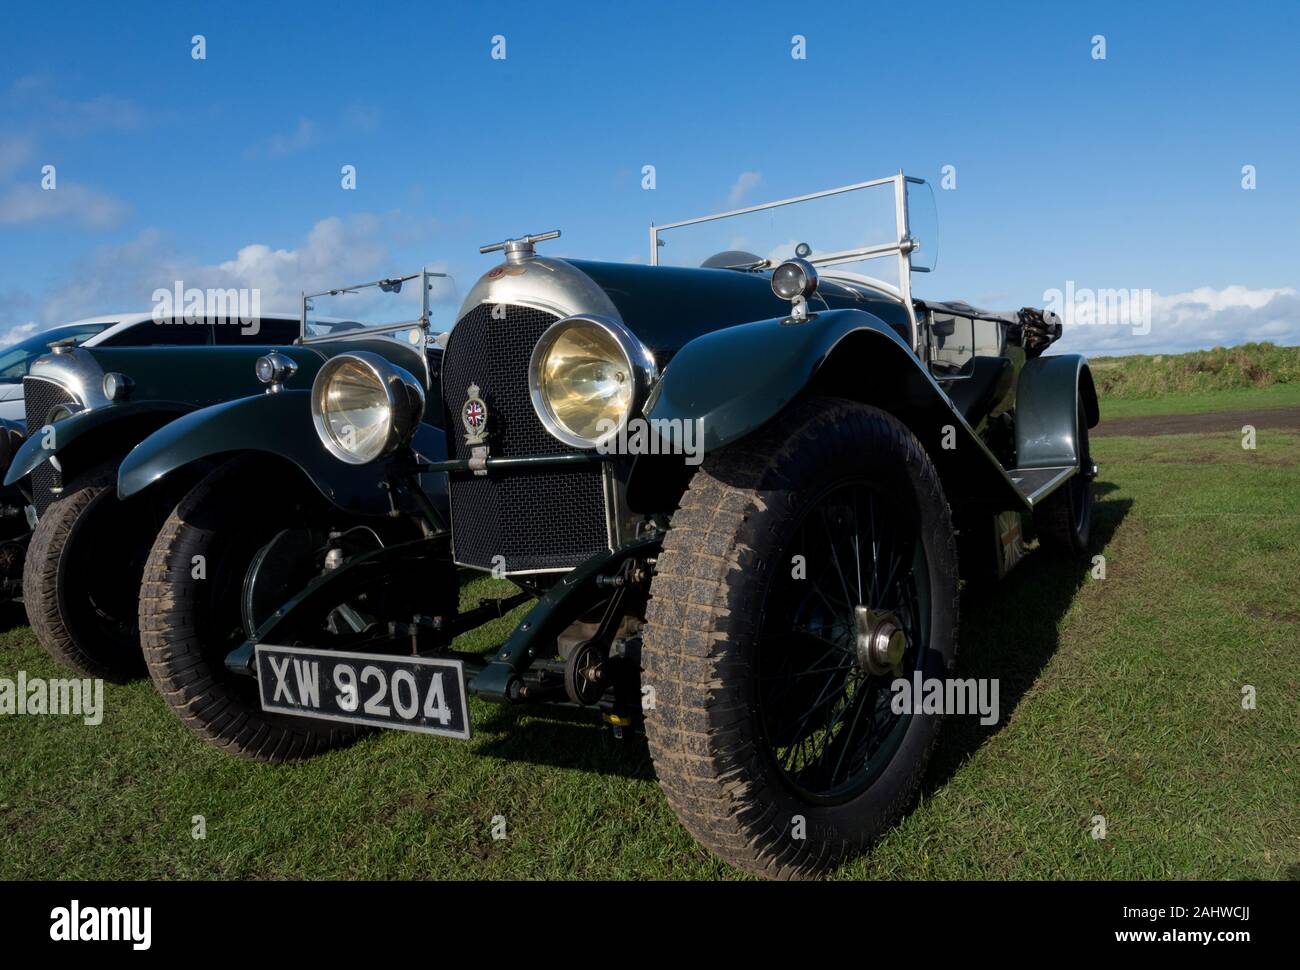 2 3/4 1/2 Vintage Bentleys in einem Feld, getrennte, gemeinsam und mit Details 17 Bilder Stockfoto